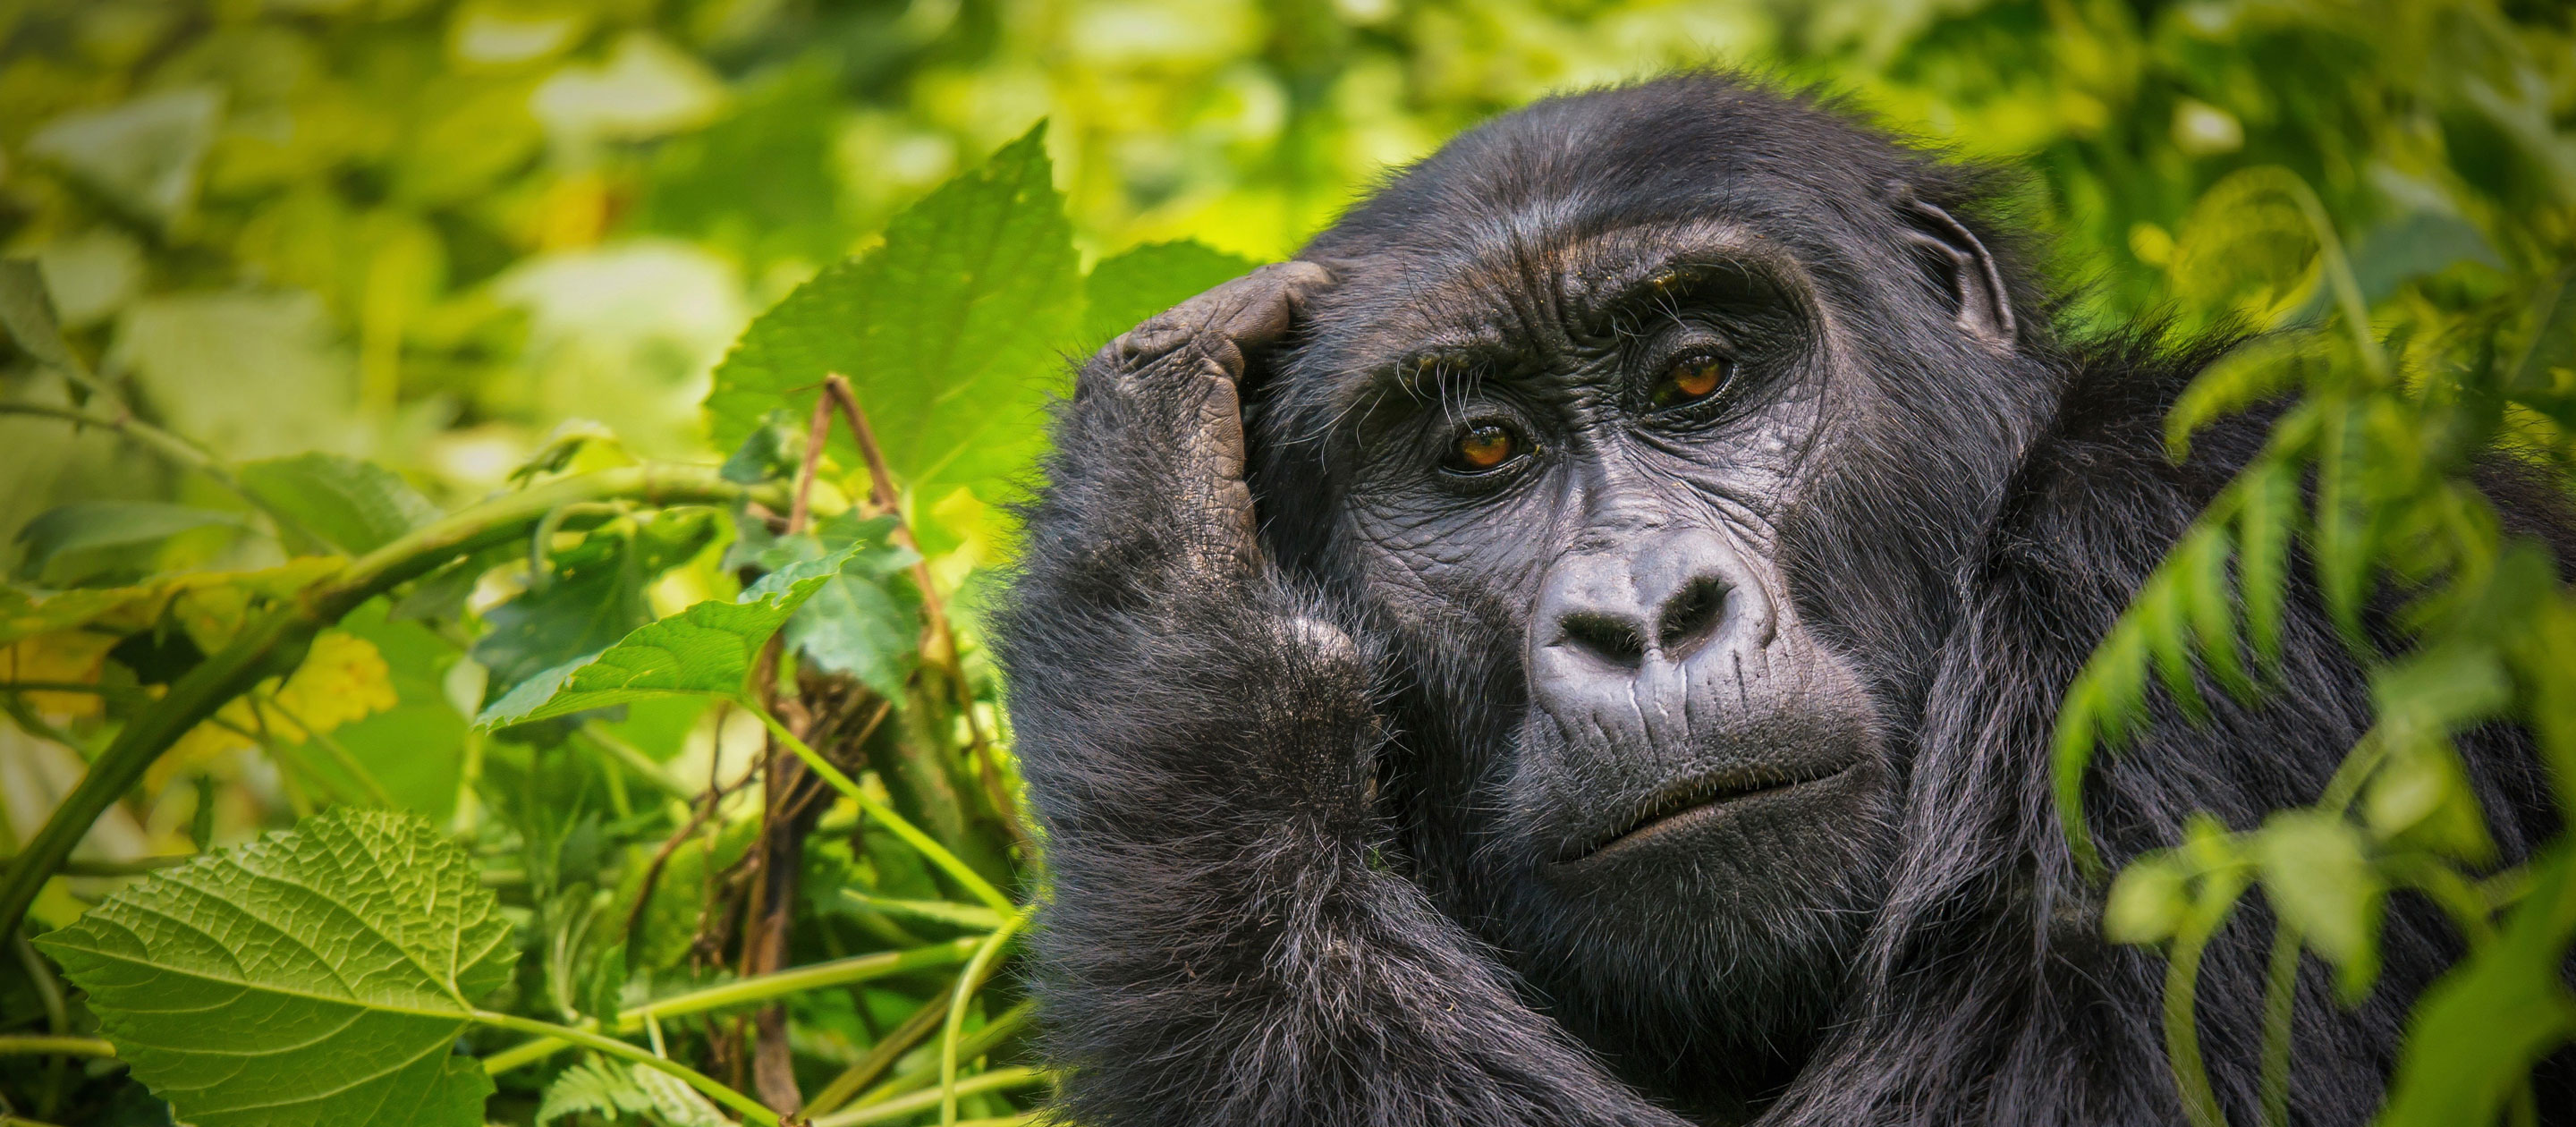 uganda gorilla safari price